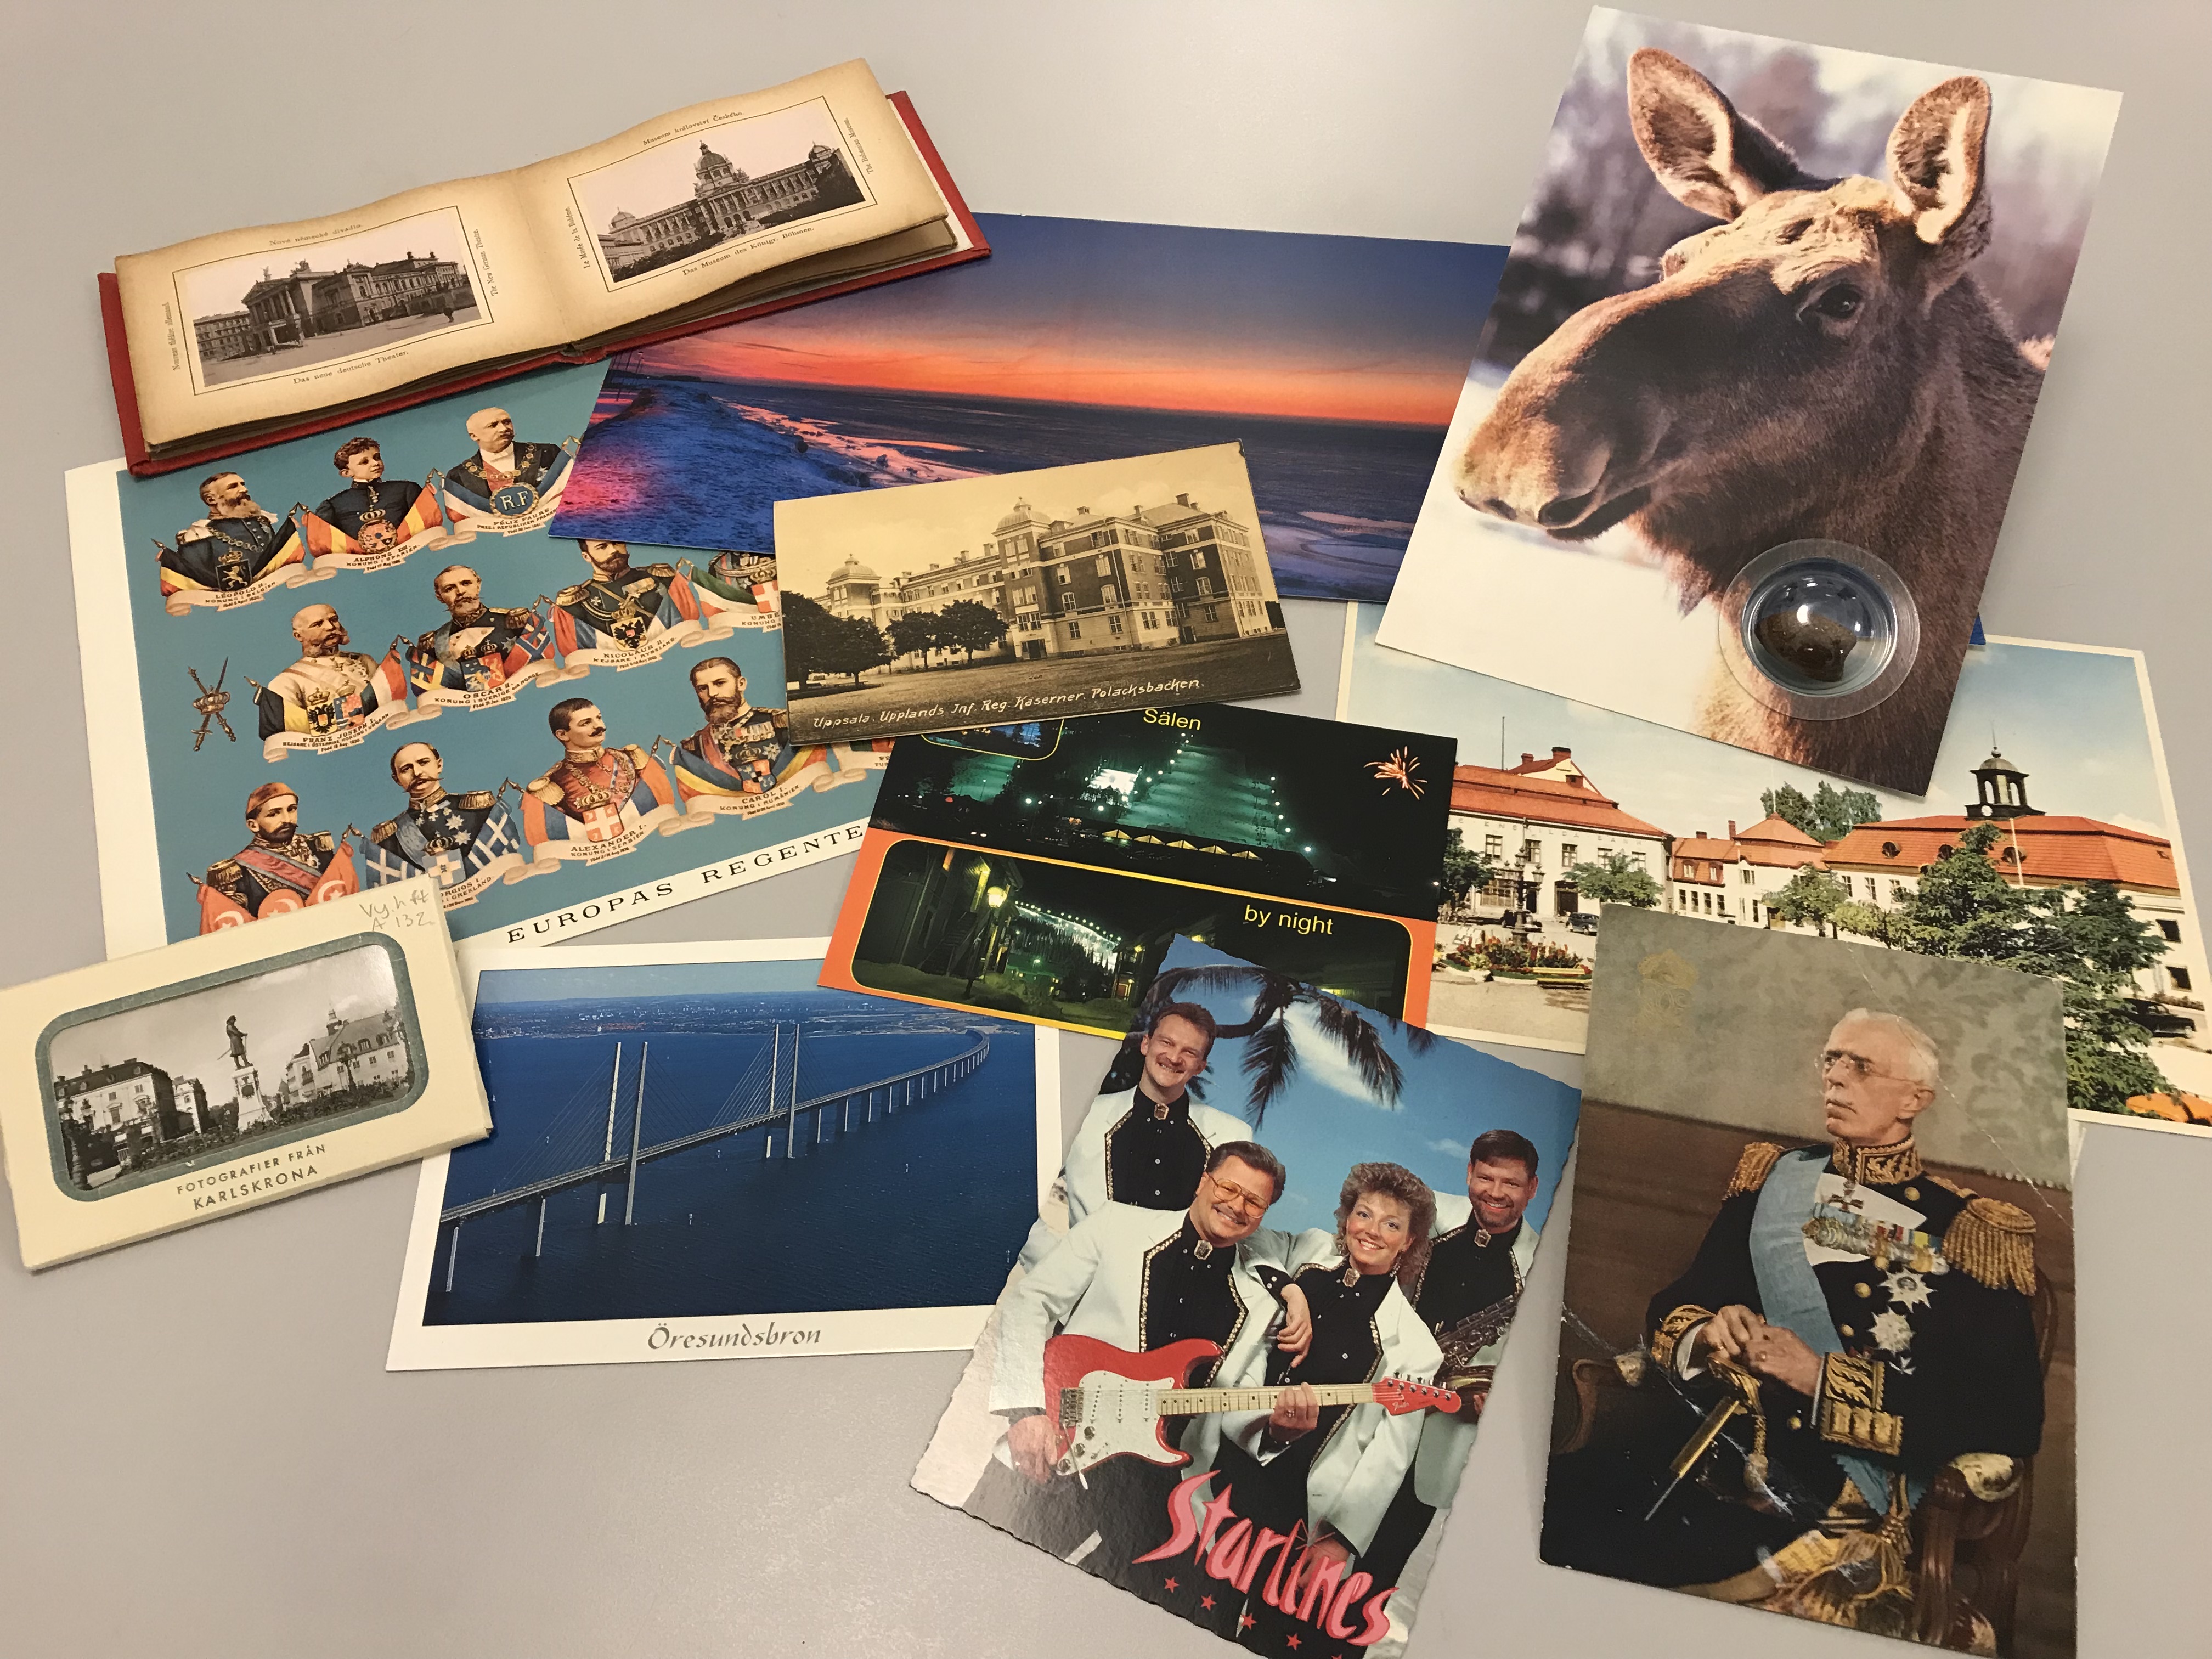 Ett kollage med de olika vykortsmotiv som förekommer i vykortssamlingen, t. ex. vykort med topografiskt motiv, vykortsporträtt, noveltykort mm.